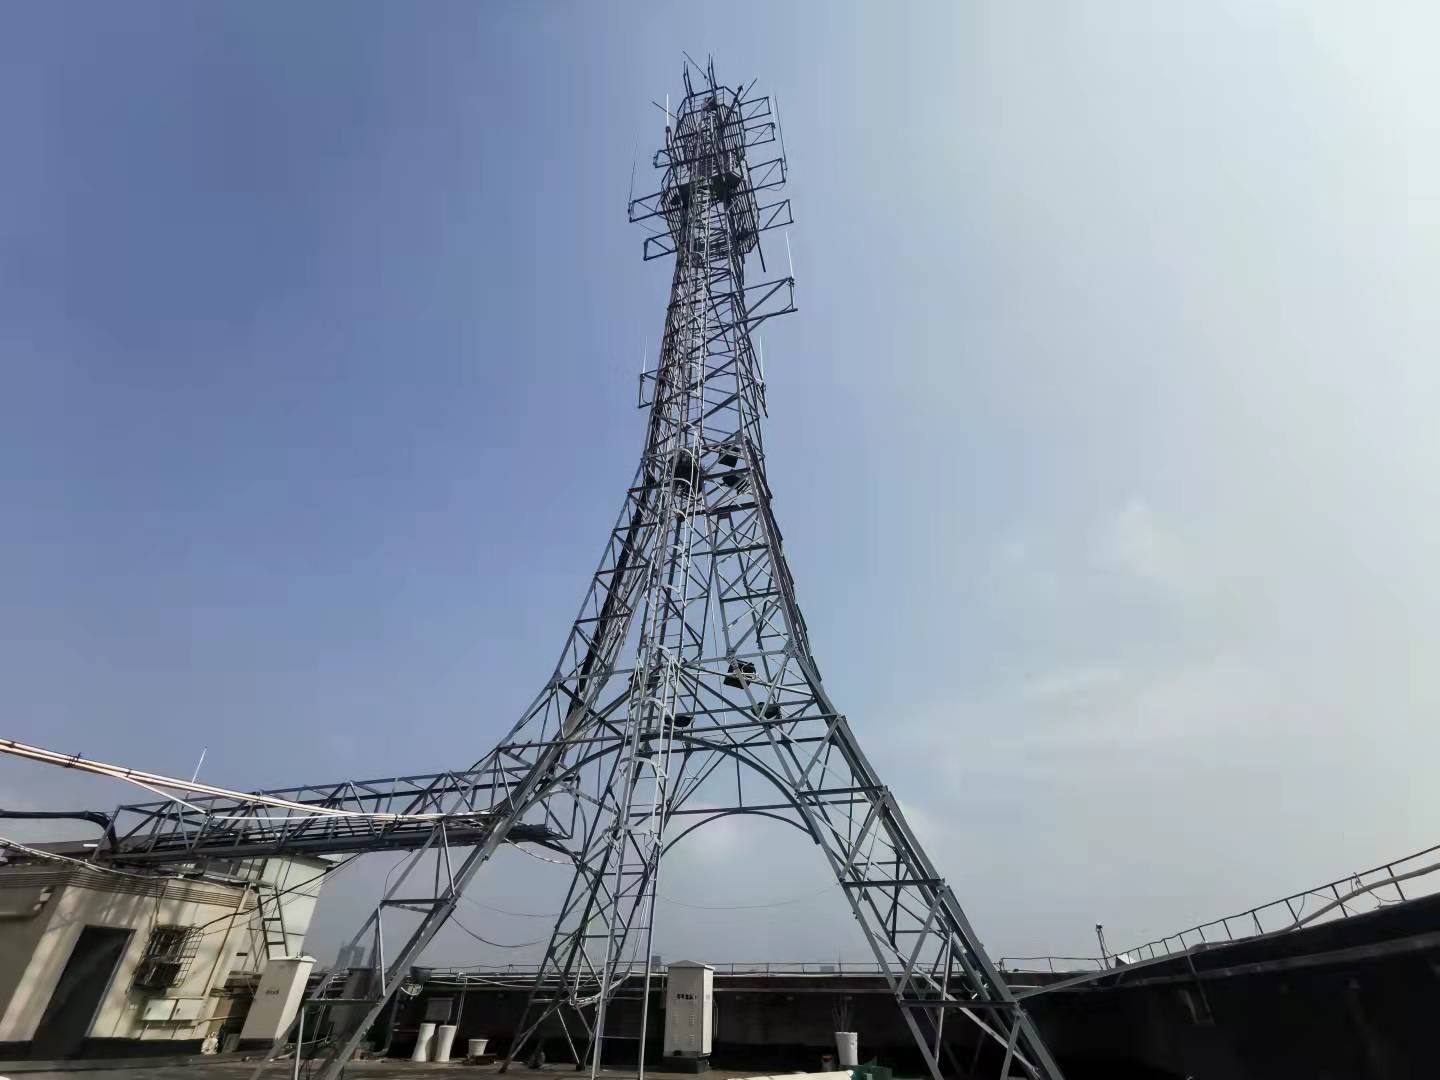 扬州附近通讯铁塔检测中心 第三方检测单位